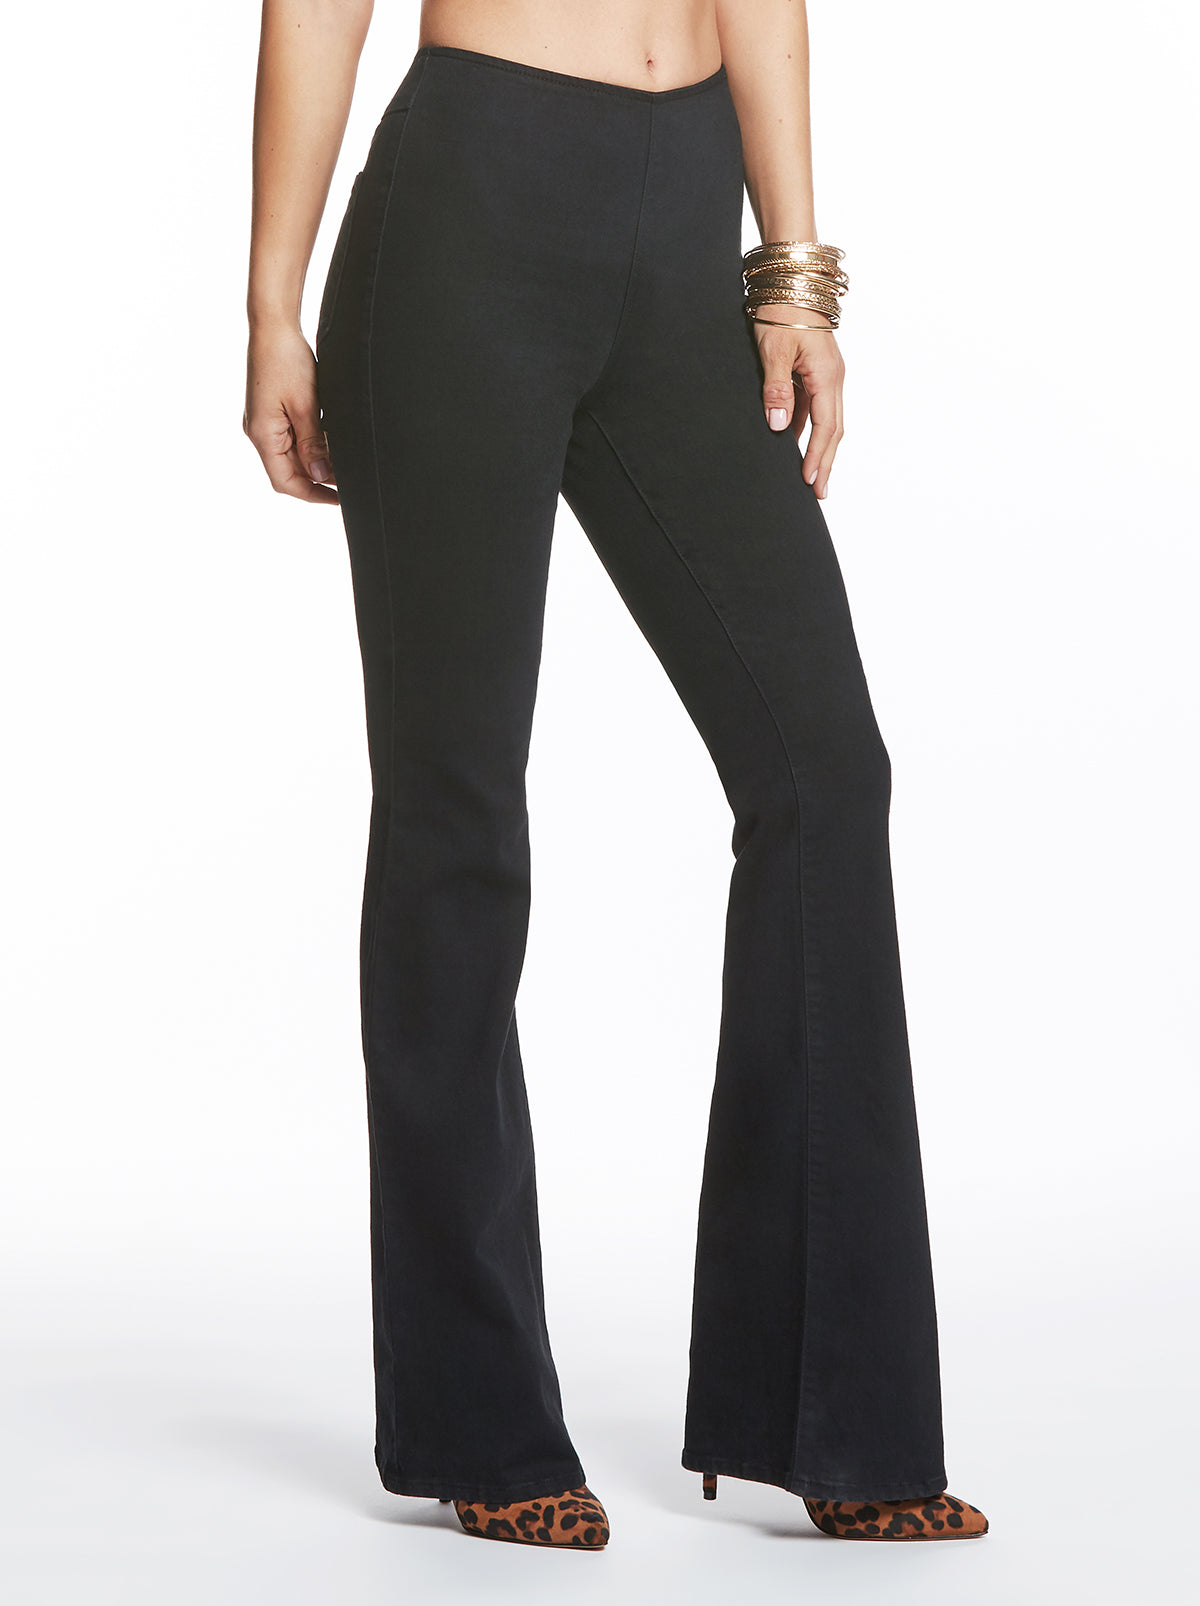 Jessica Simpson Black Active Pants Size L - 50% off